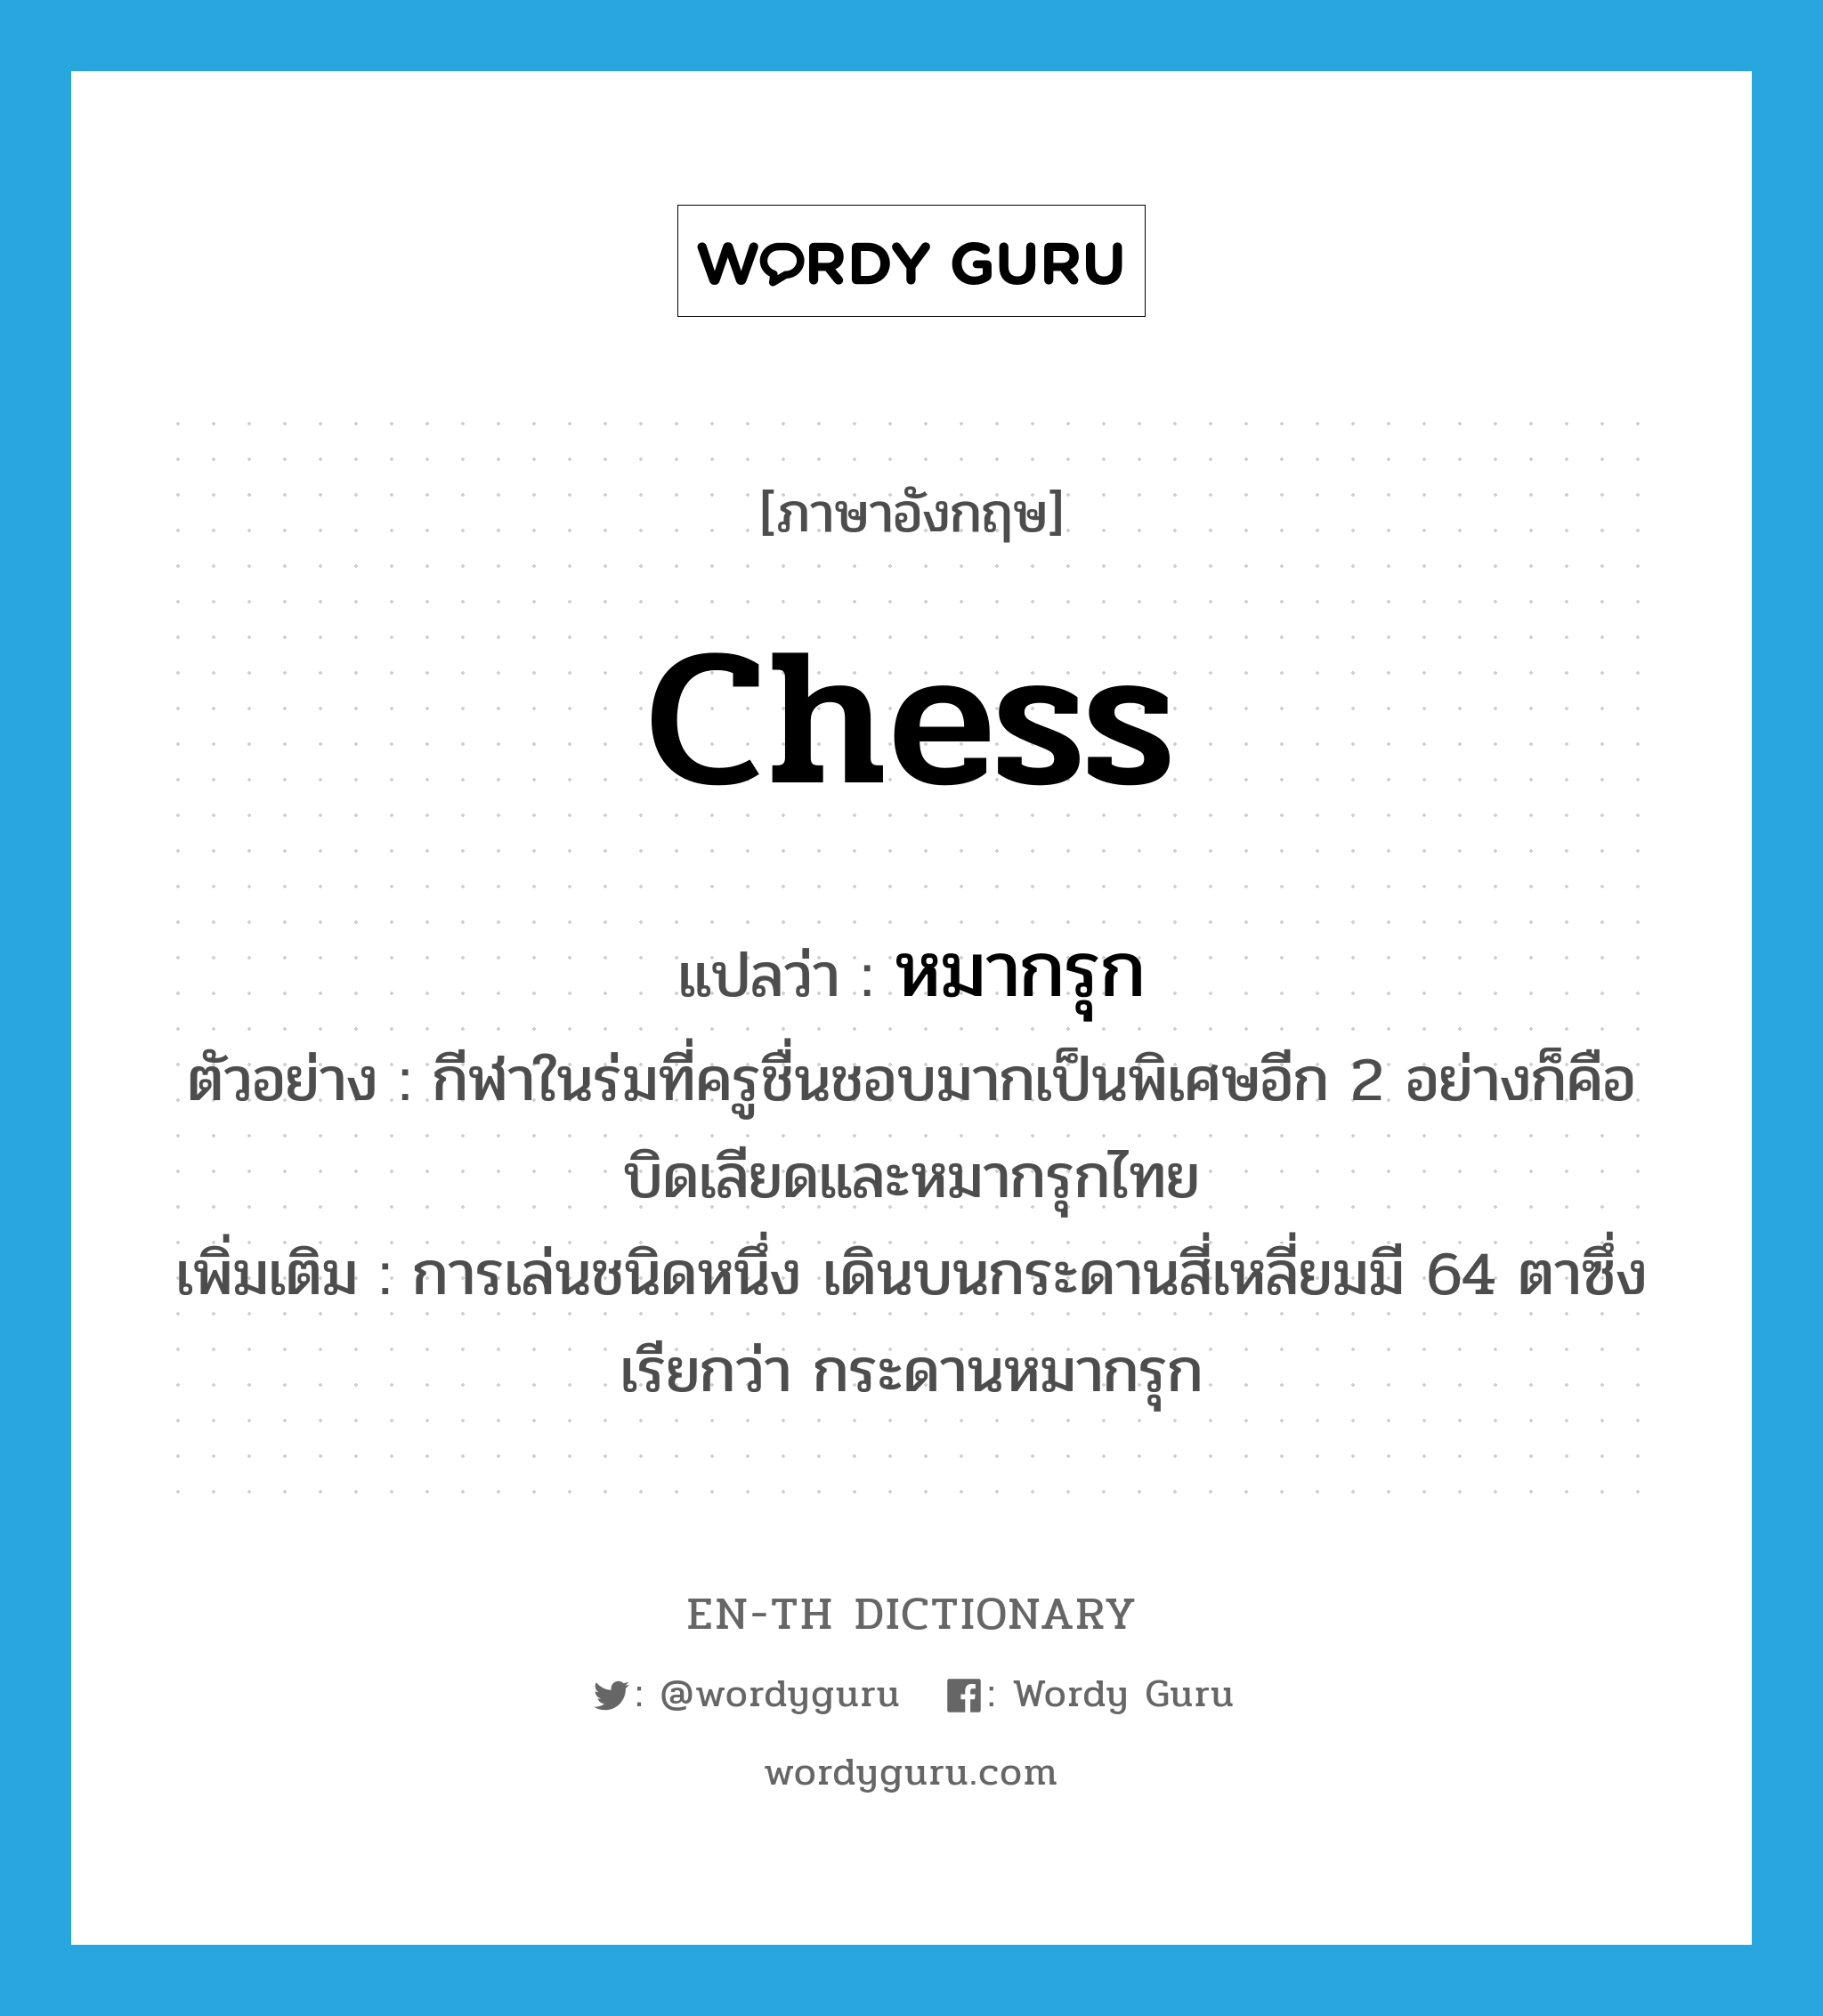 chess แปลว่า?, คำศัพท์ภาษาอังกฤษ chess แปลว่า หมากรุก ประเภท N ตัวอย่าง กีฬาในร่มที่ครูชื่นชอบมากเป็นพิเศษอีก 2 อย่างก็คือบิดเลียดและหมากรุกไทย เพิ่มเติม การเล่นชนิดหนึ่ง เดินบนกระดานสี่เหลี่ยมมี 64 ตาซึ่งเรียกว่า กระดานหมากรุก หมวด N